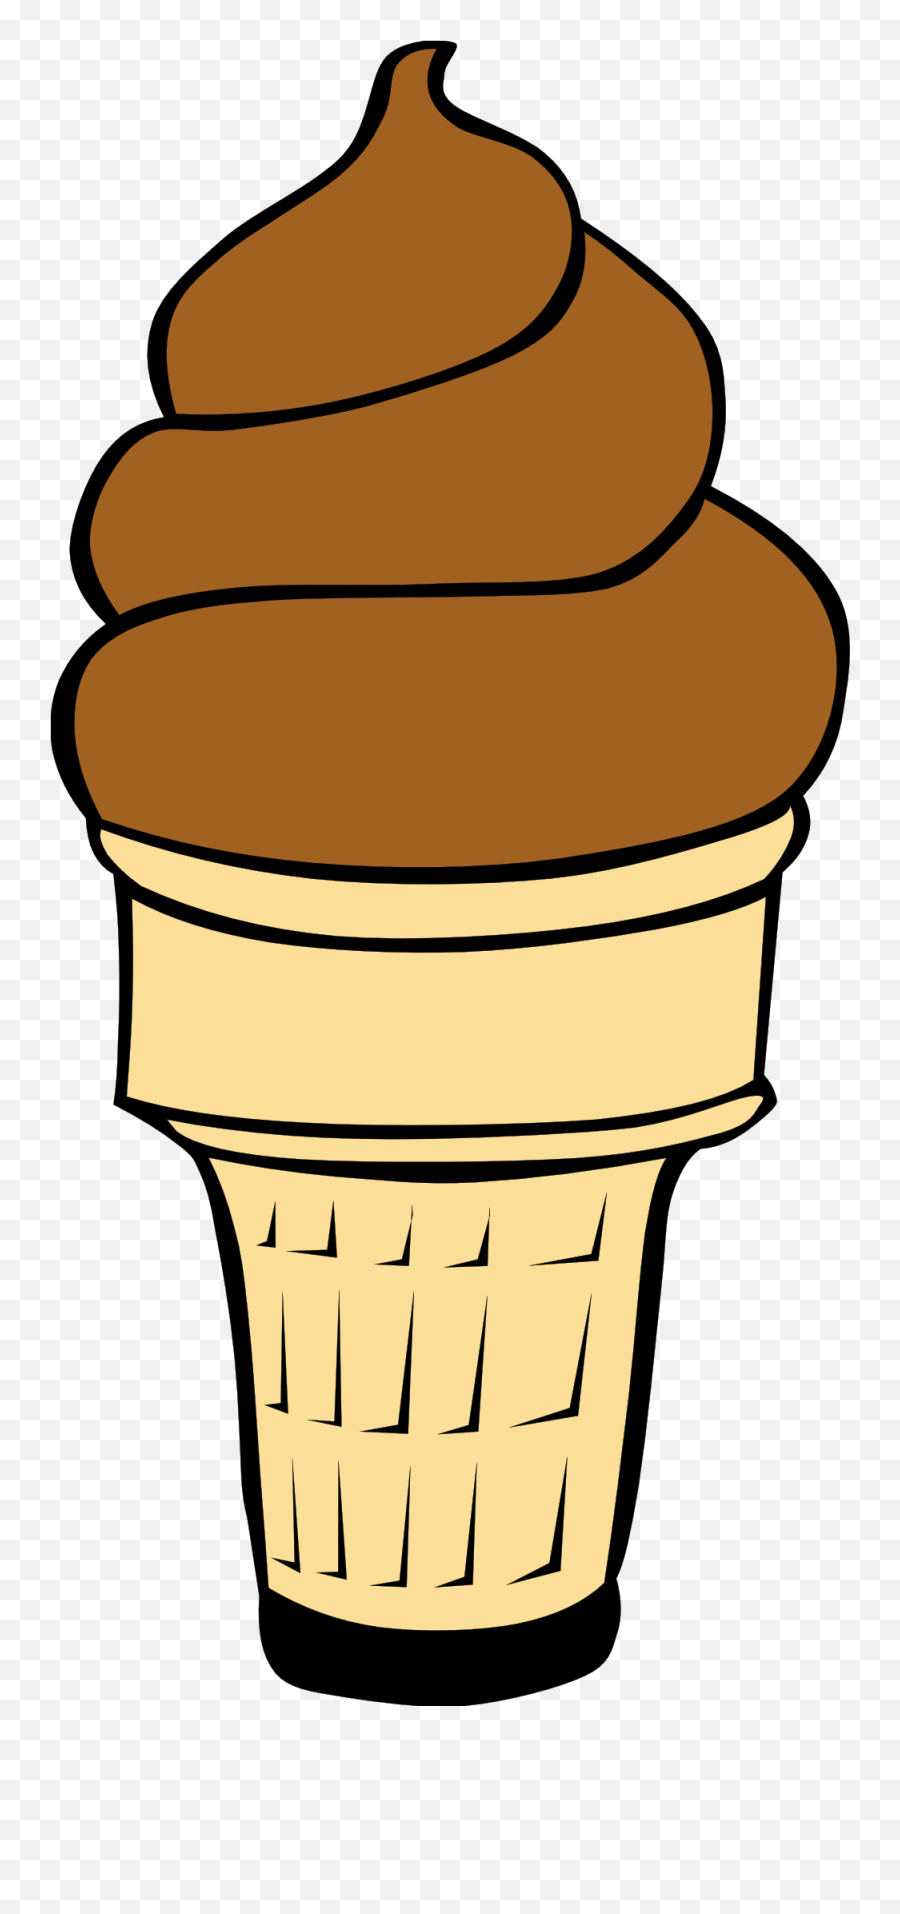 Chocolate Ice Cream Cone Clip Art - Ice Cream Cone Clipart Emoji,Ice Cream Cone Clipart